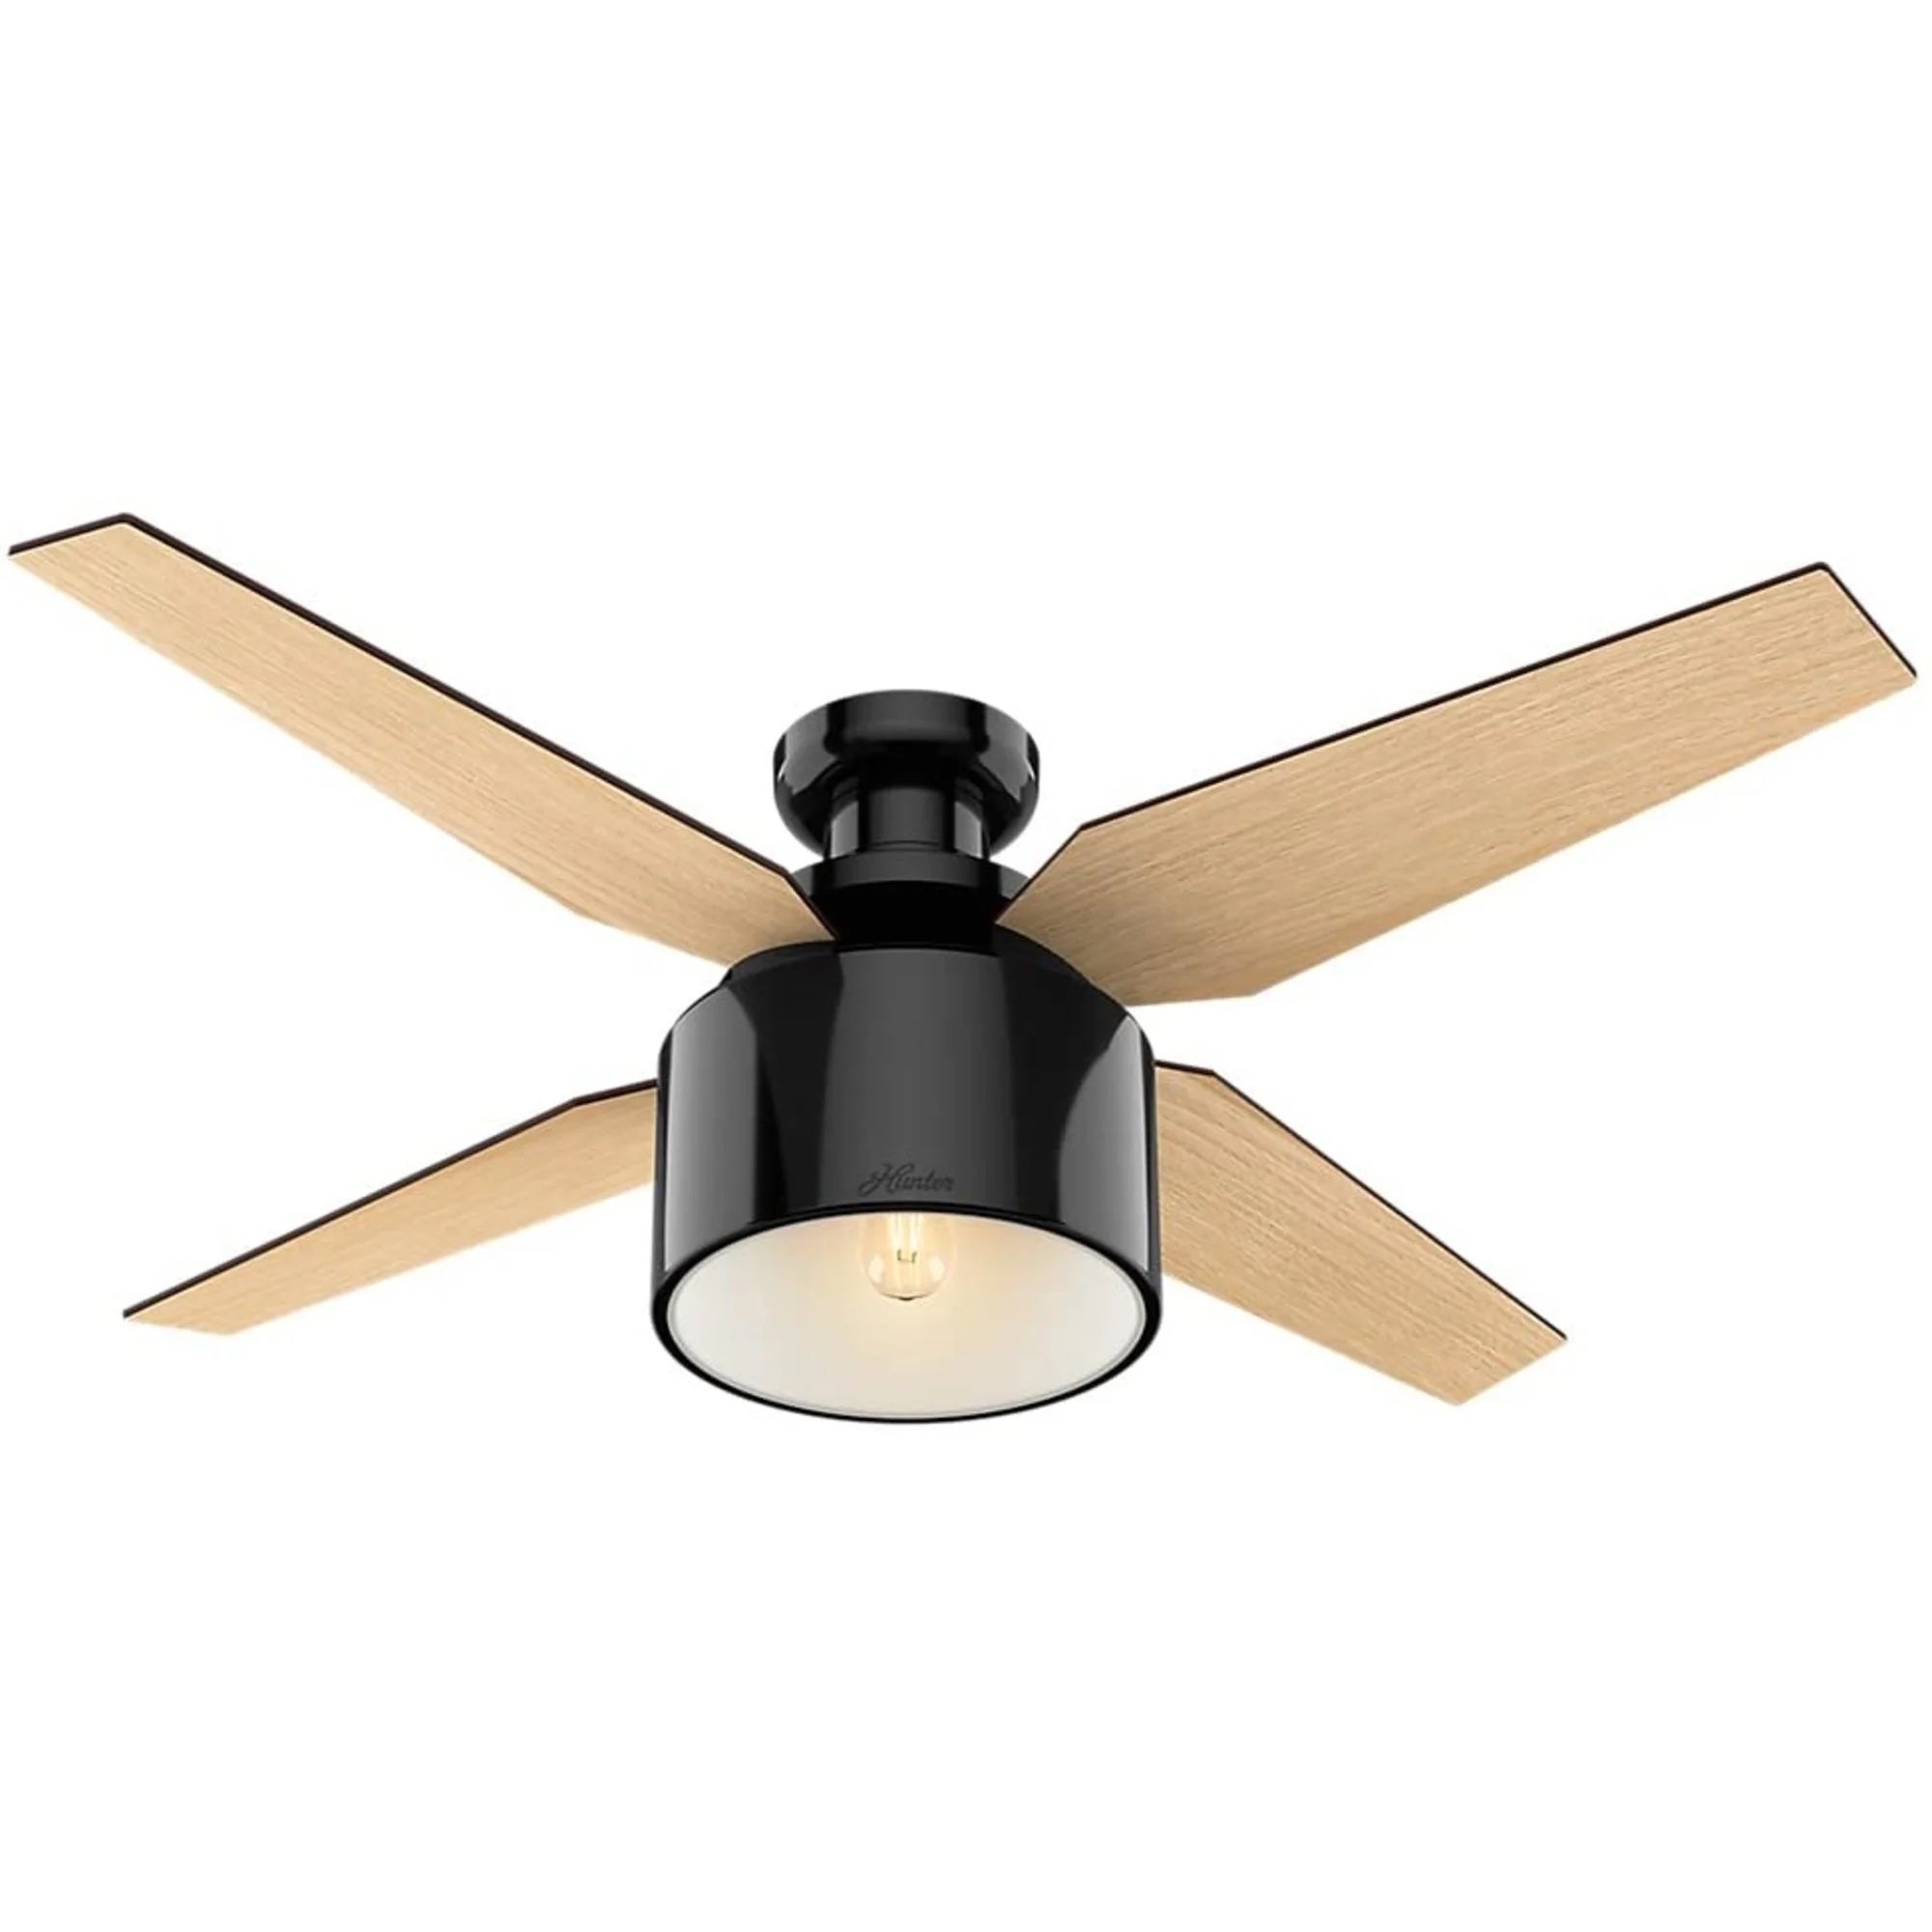 design forward ceiling fan